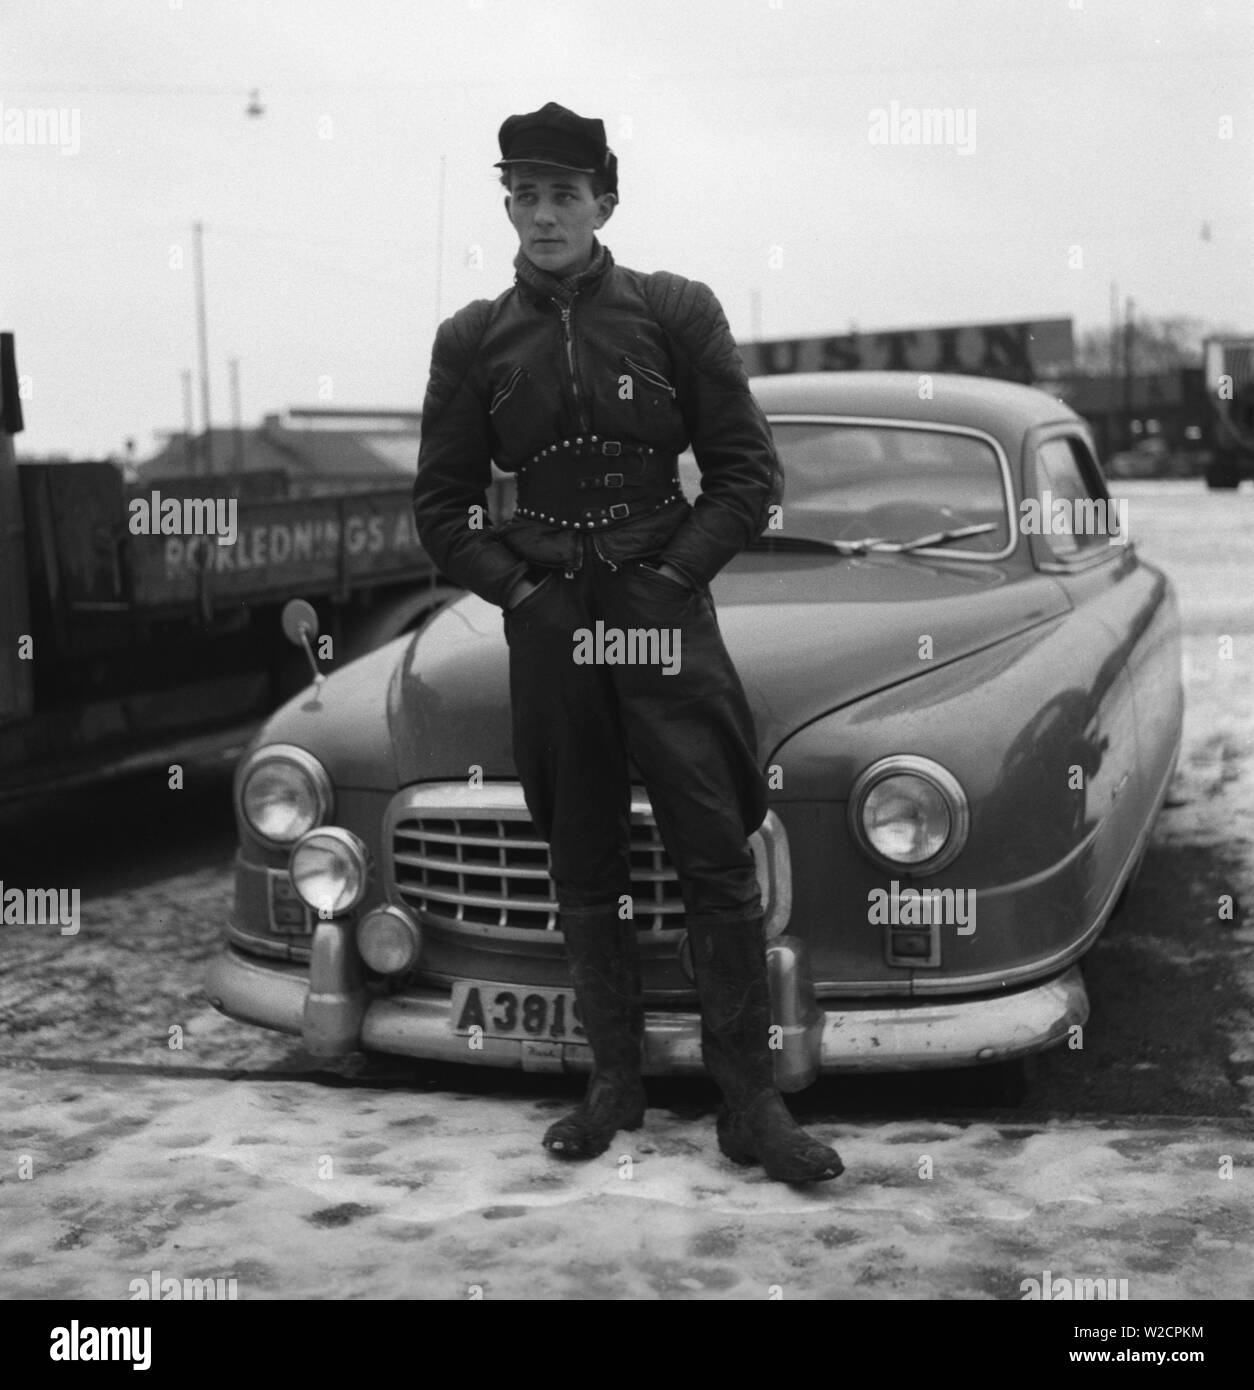 Motocycliste dans les années 1950. Un jeune homme vêtu de la façon typique les motards ont fait dans les années 1950. Tout en cuir. Bottes en cuir, pantalon et veste. A une ceinture et un chapeau typique motocycliste. La Suède Décembre 1954 Banque D'Images